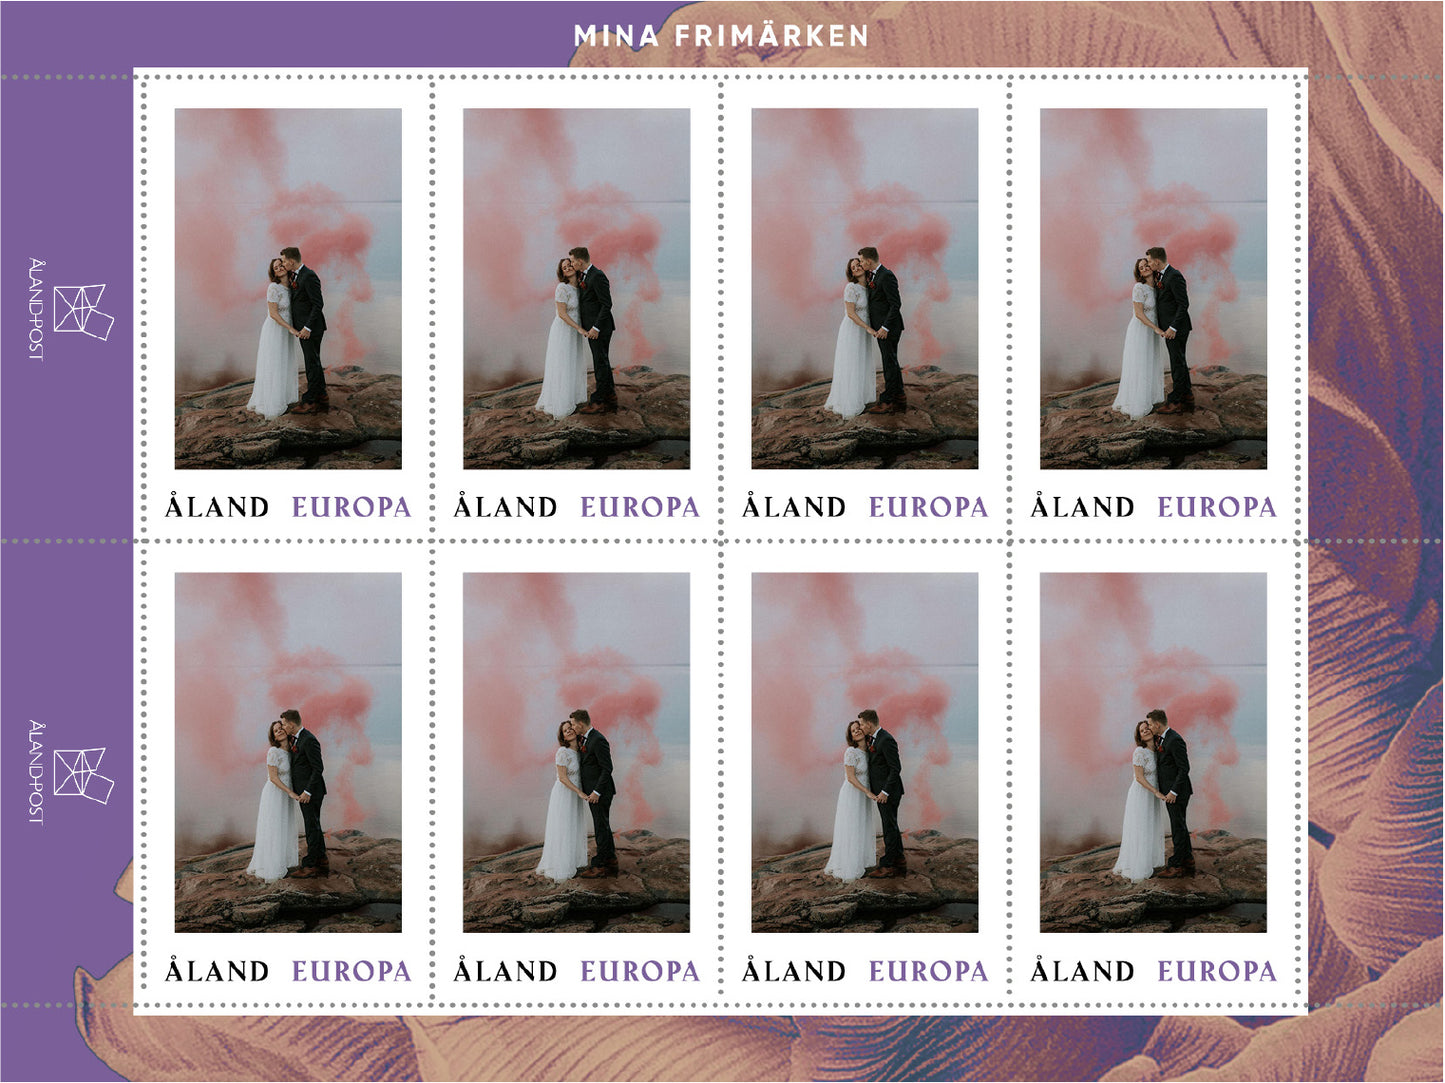 Personalisierte Briefmarken entwerfen, Porto Europa